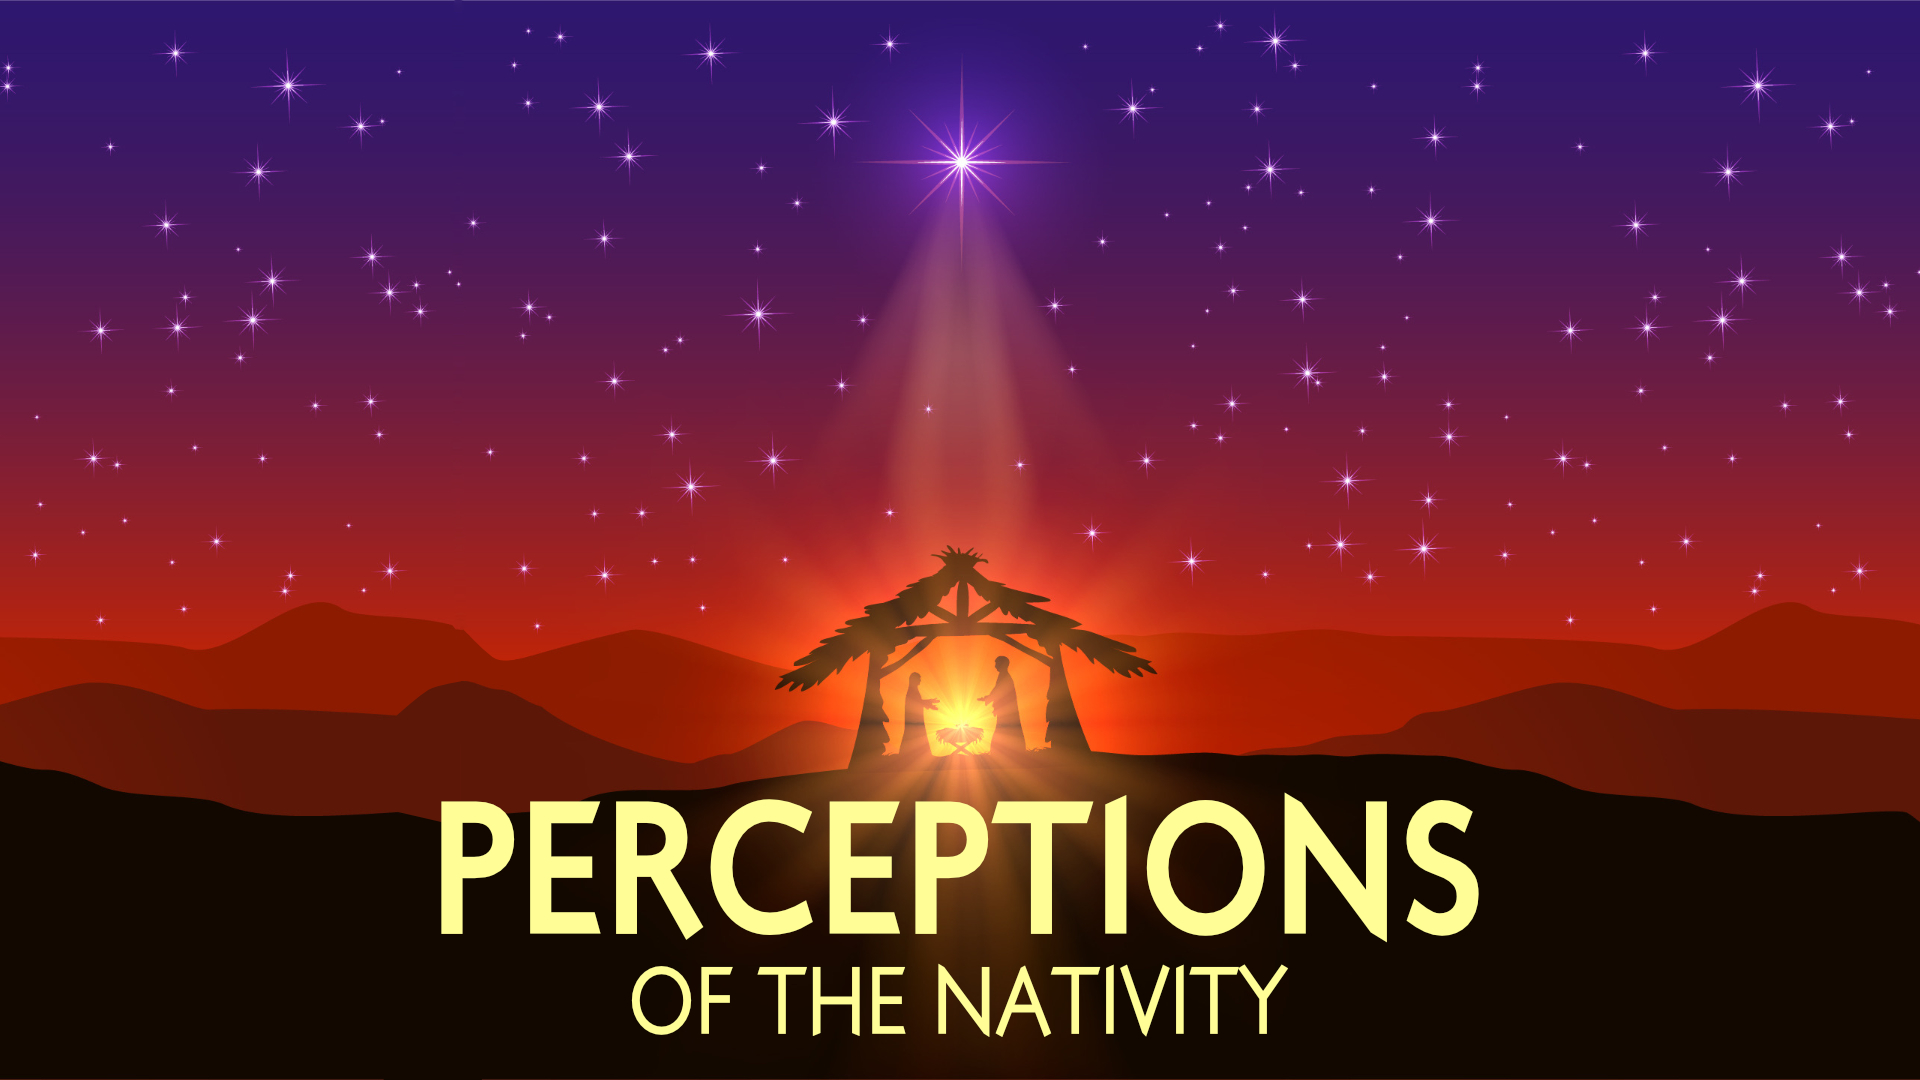 Perceptions of the Nativity • Dec. 3 - Dec. 24, 2017